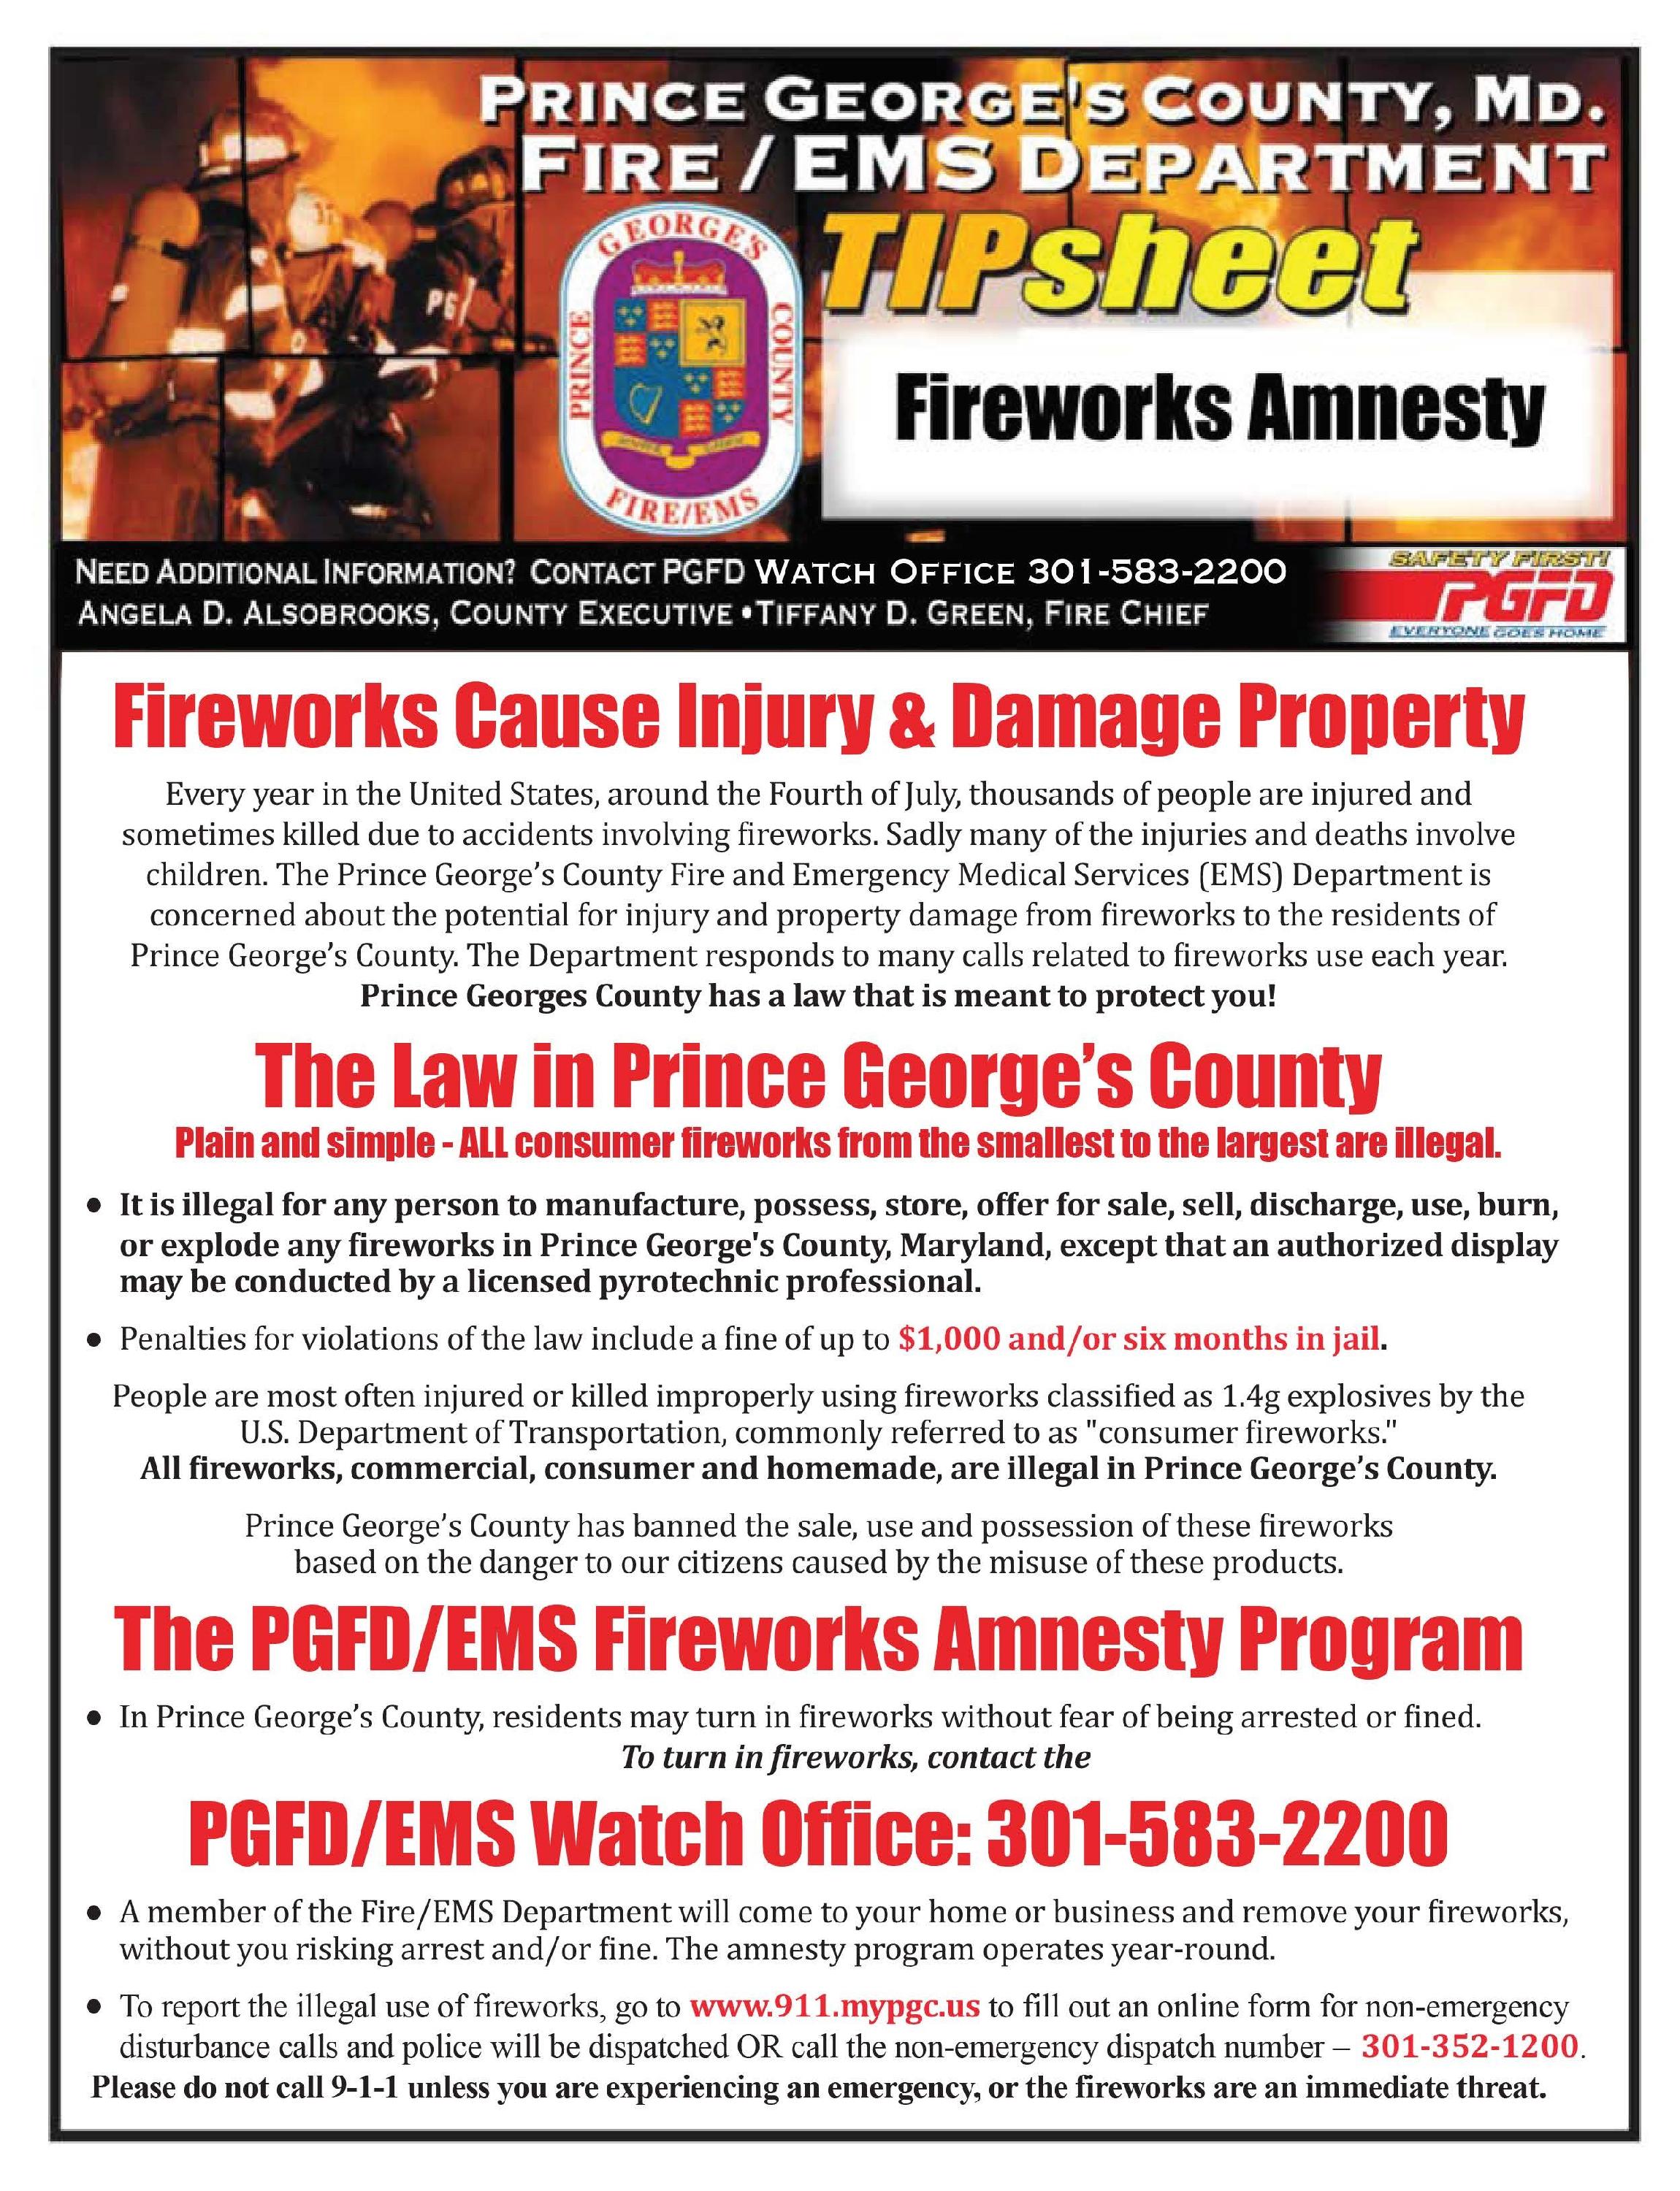 Fireworks-Amnesty-Program